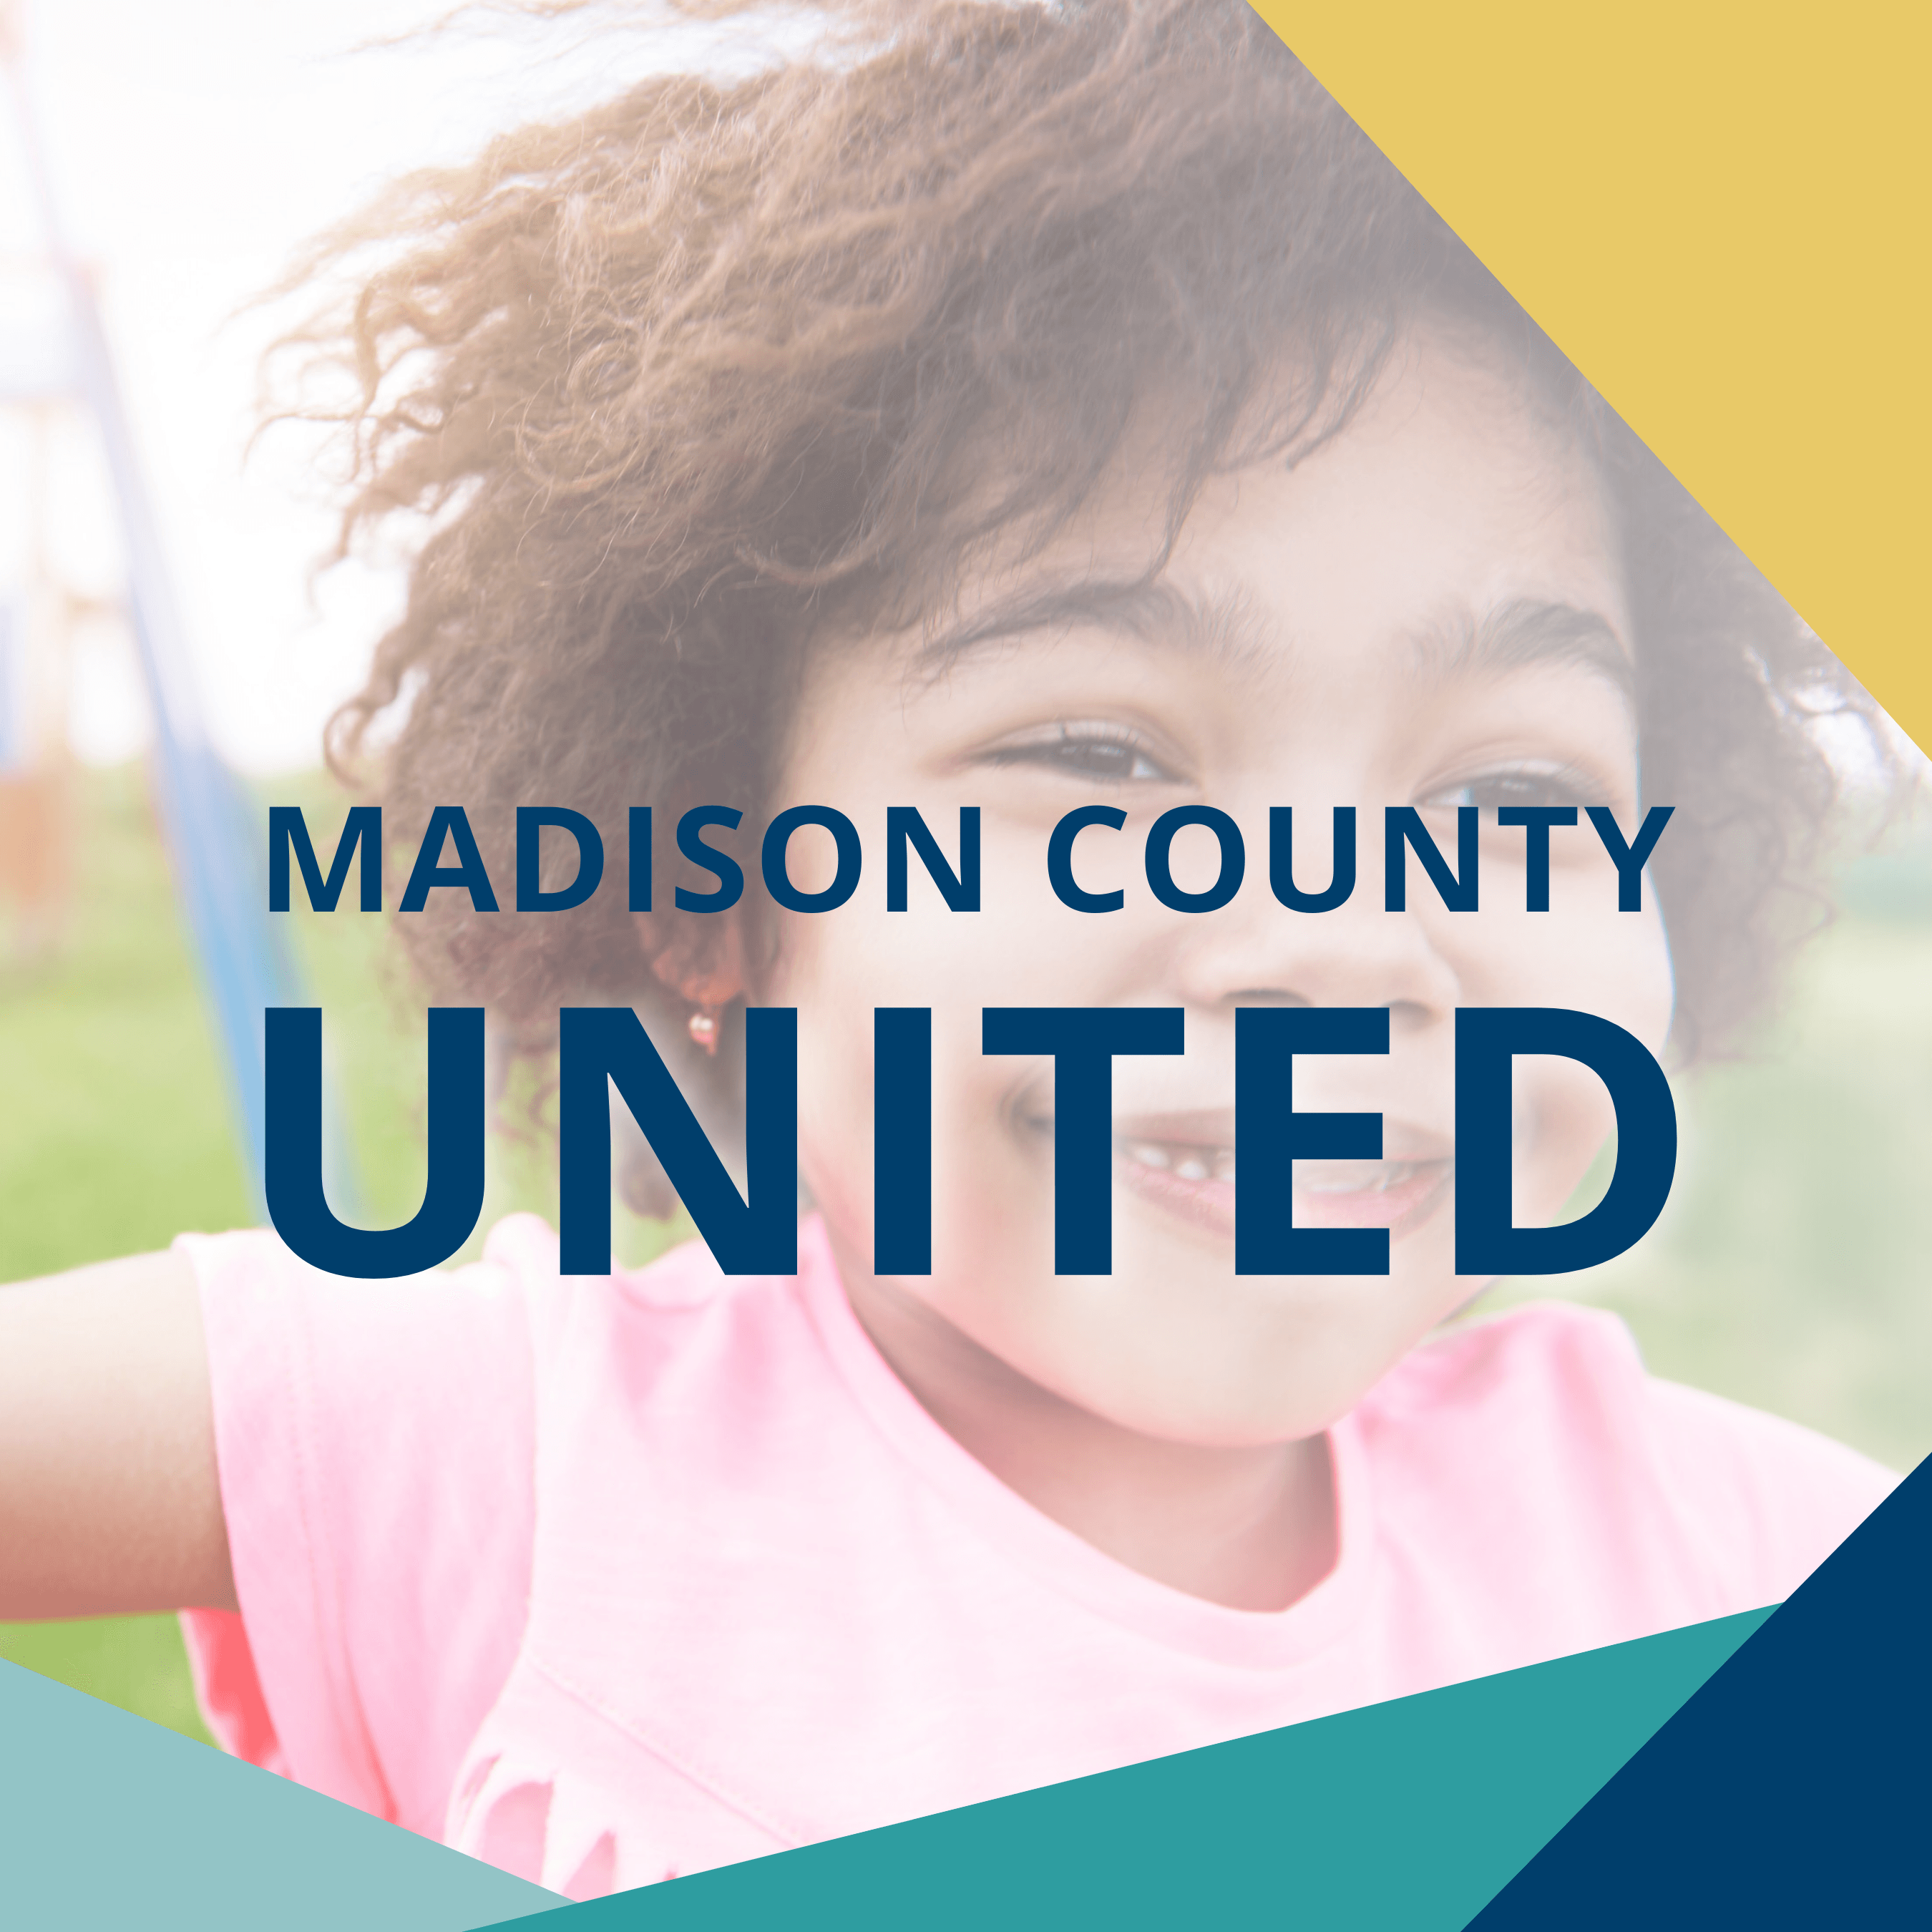 Madison County United